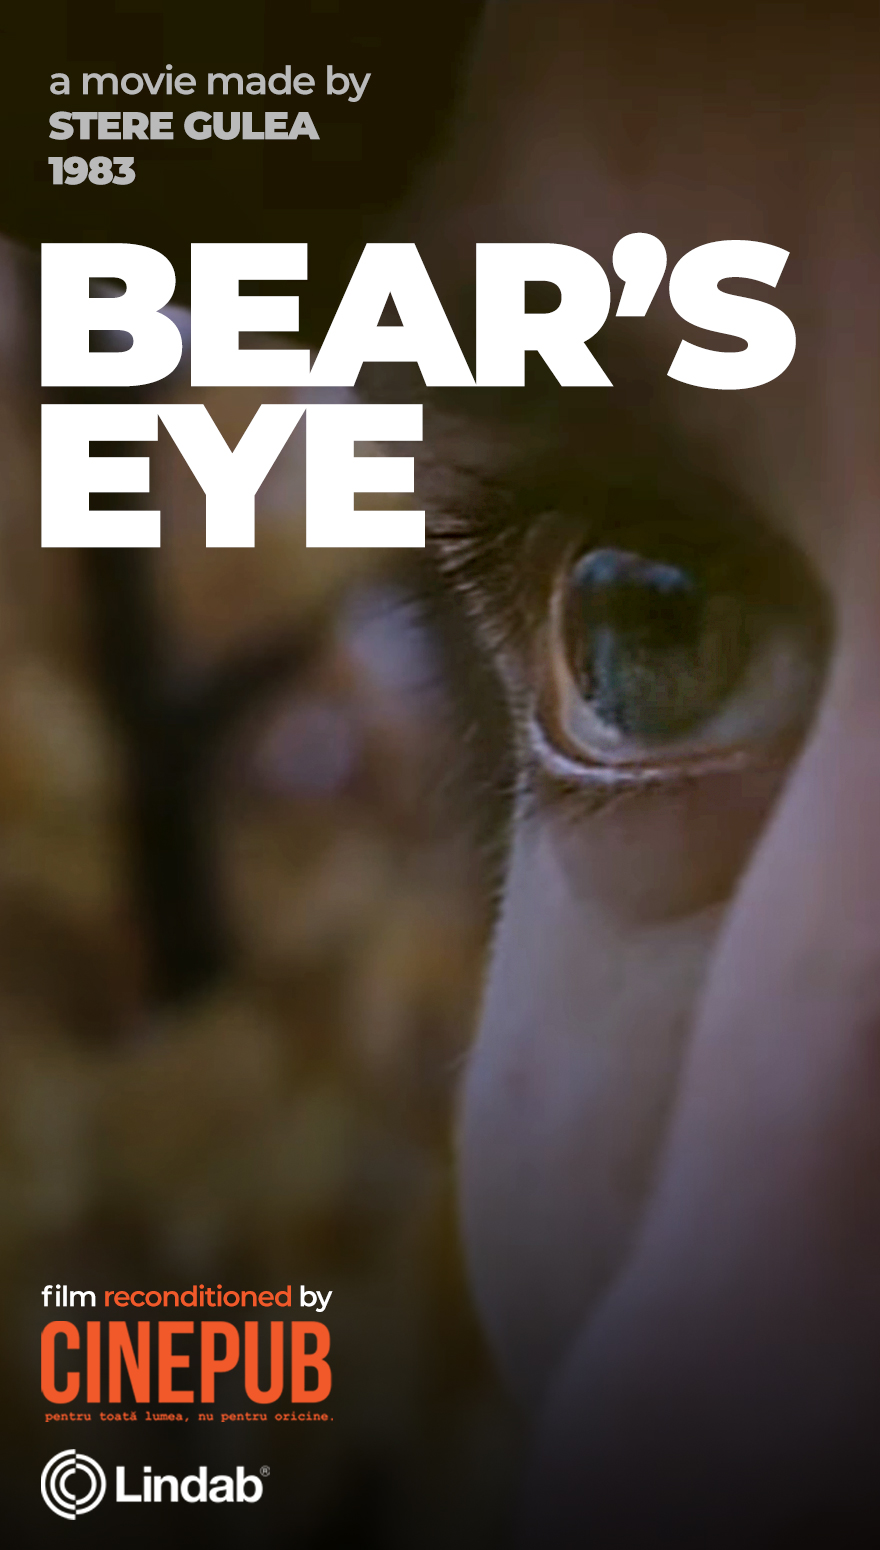 Bear's Eye - feature film online by Stere Gulea